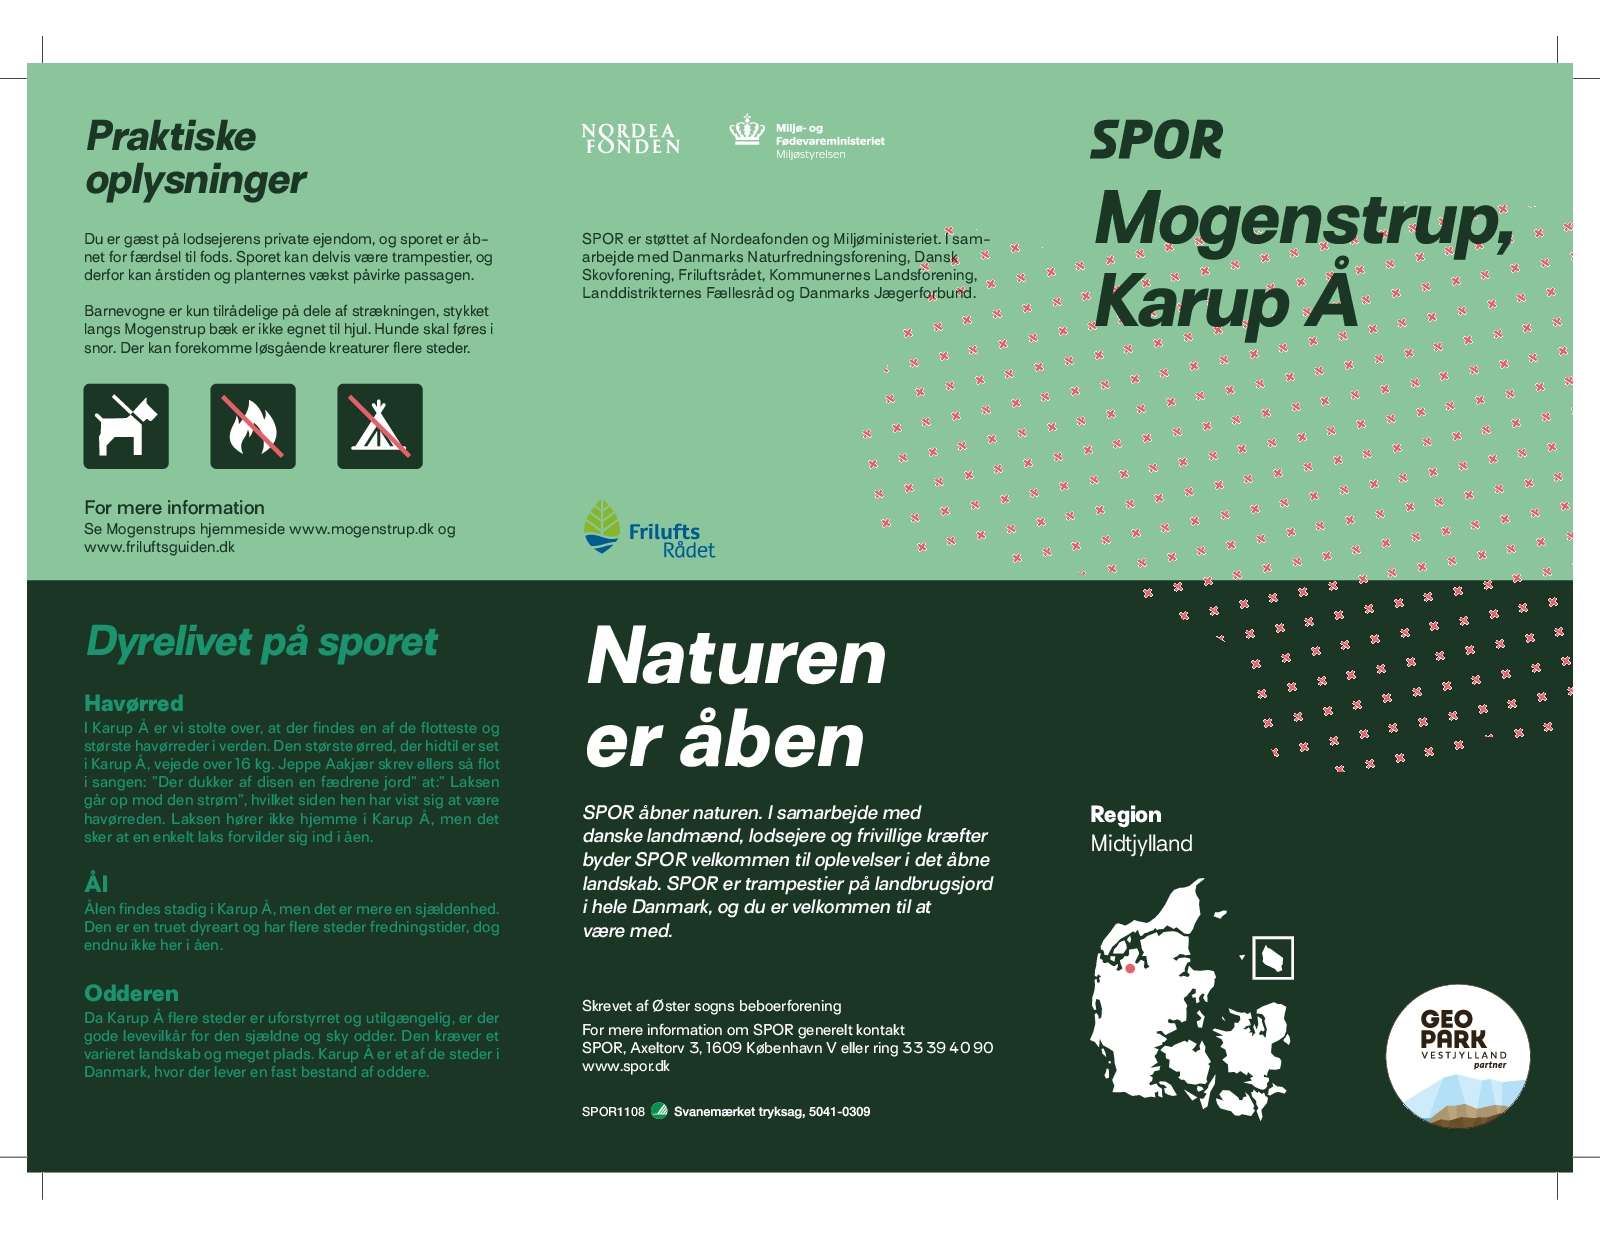 2020 SPOR folder Mogenstrup   Karup Å 1108 trykklar